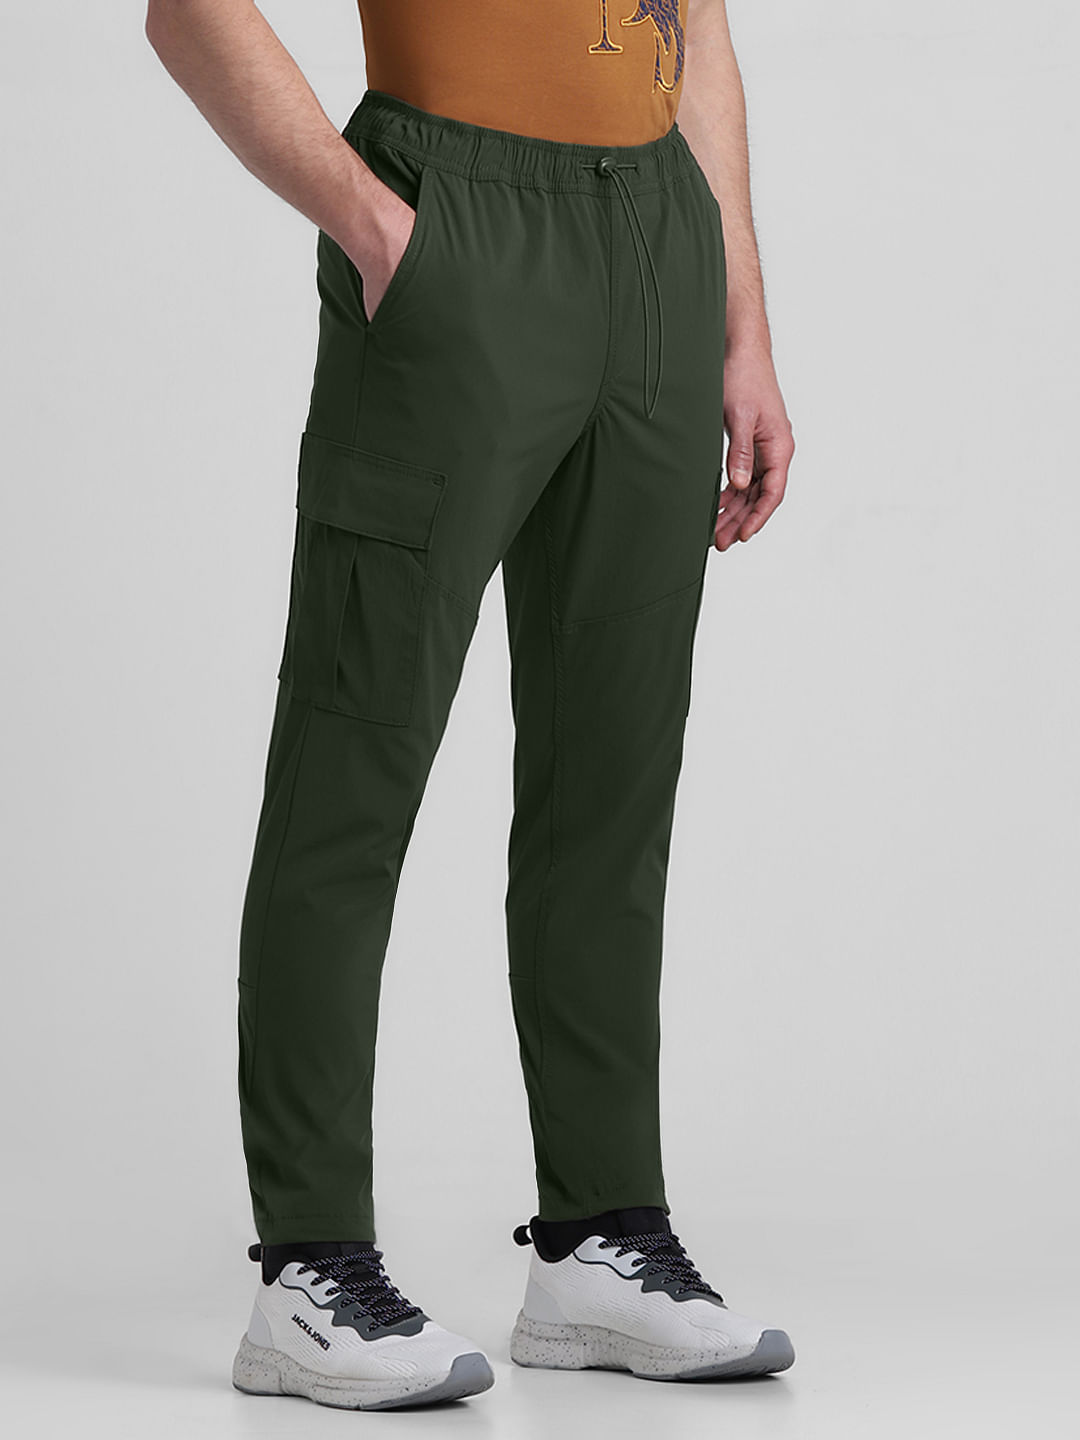 Polo Ralph Lauren Varick Slim Straight Jeans Olive Green Denim Pants Men 42  X 30 | eBay